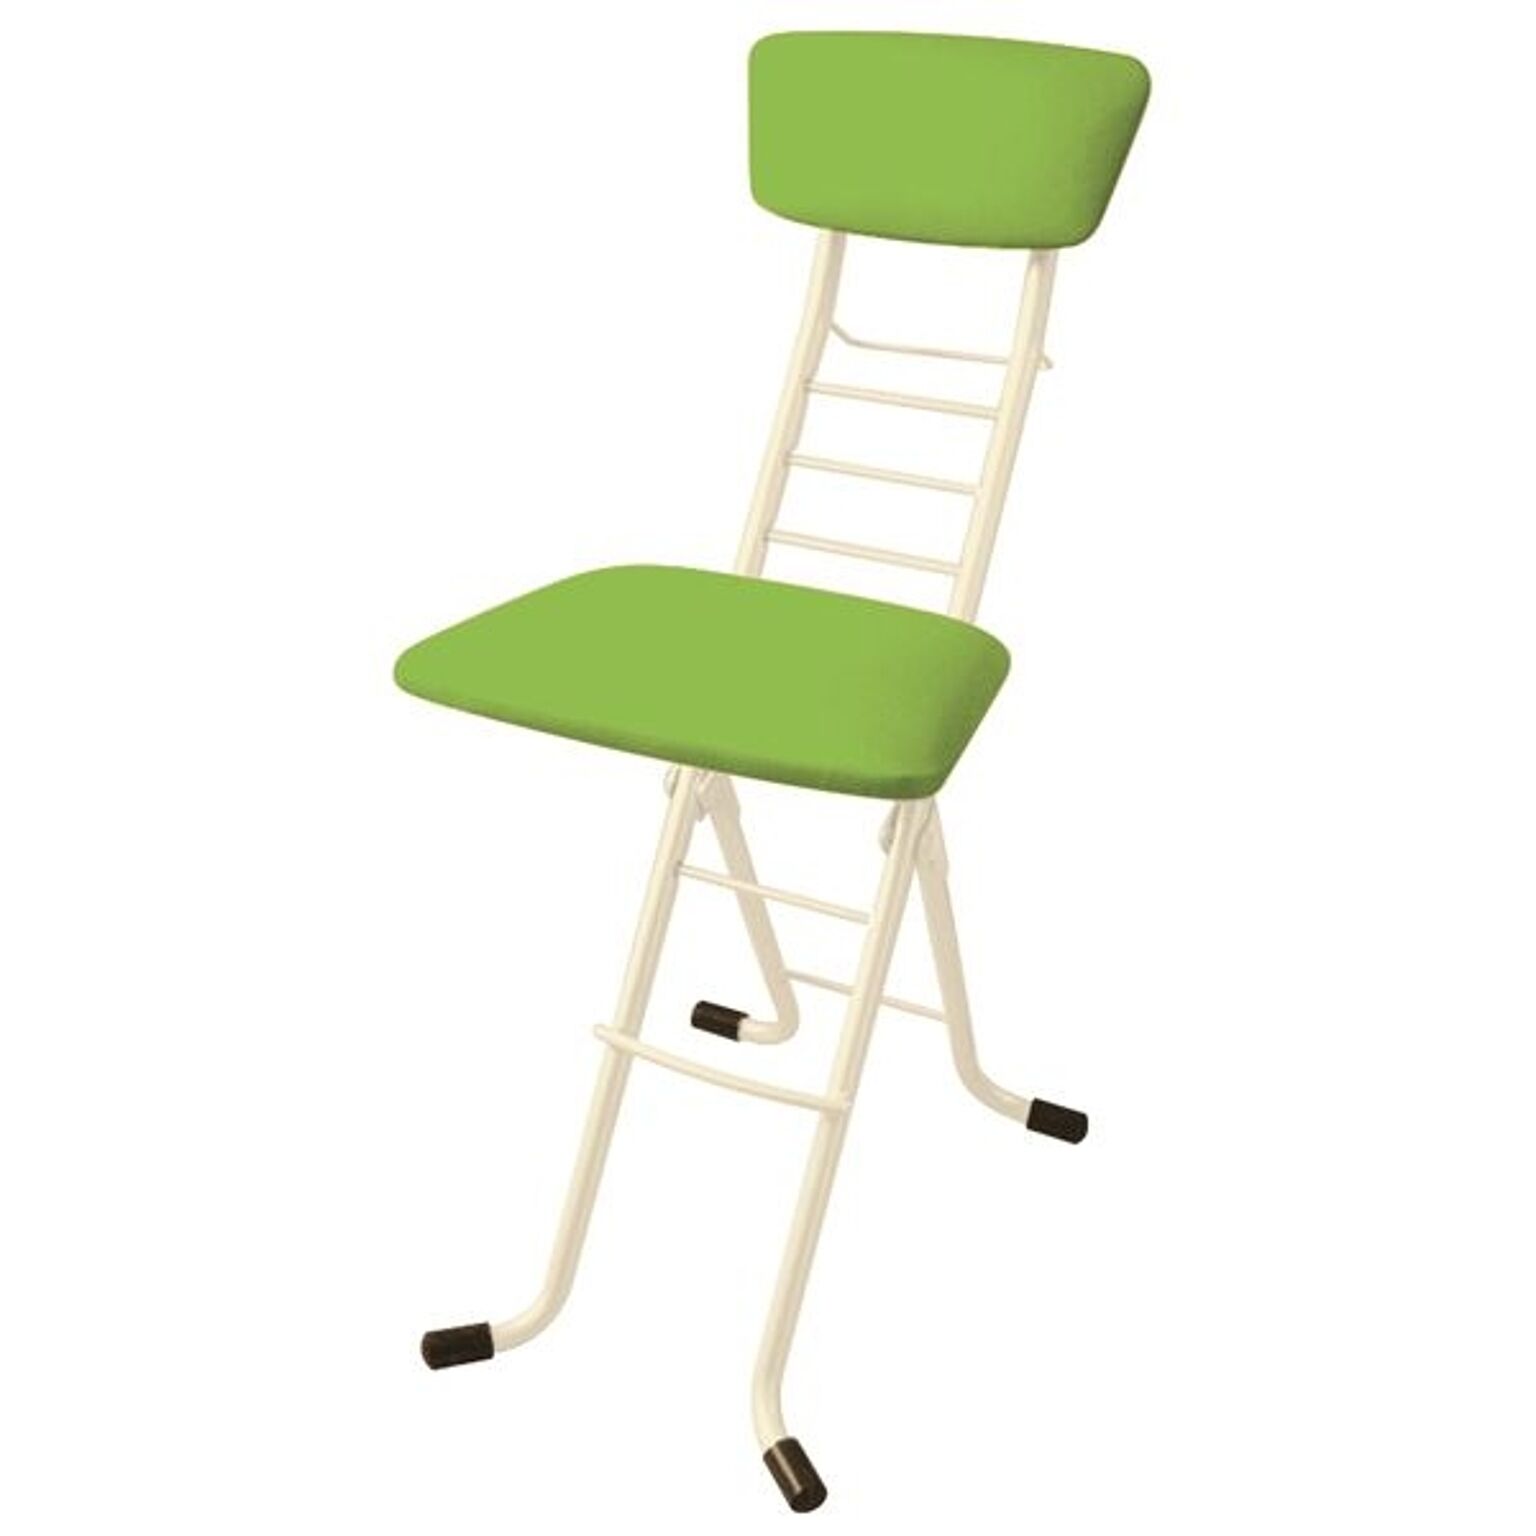 パイプ椅子リメイクのおすすめ商品とおしゃれな実例 ｜ RoomClip